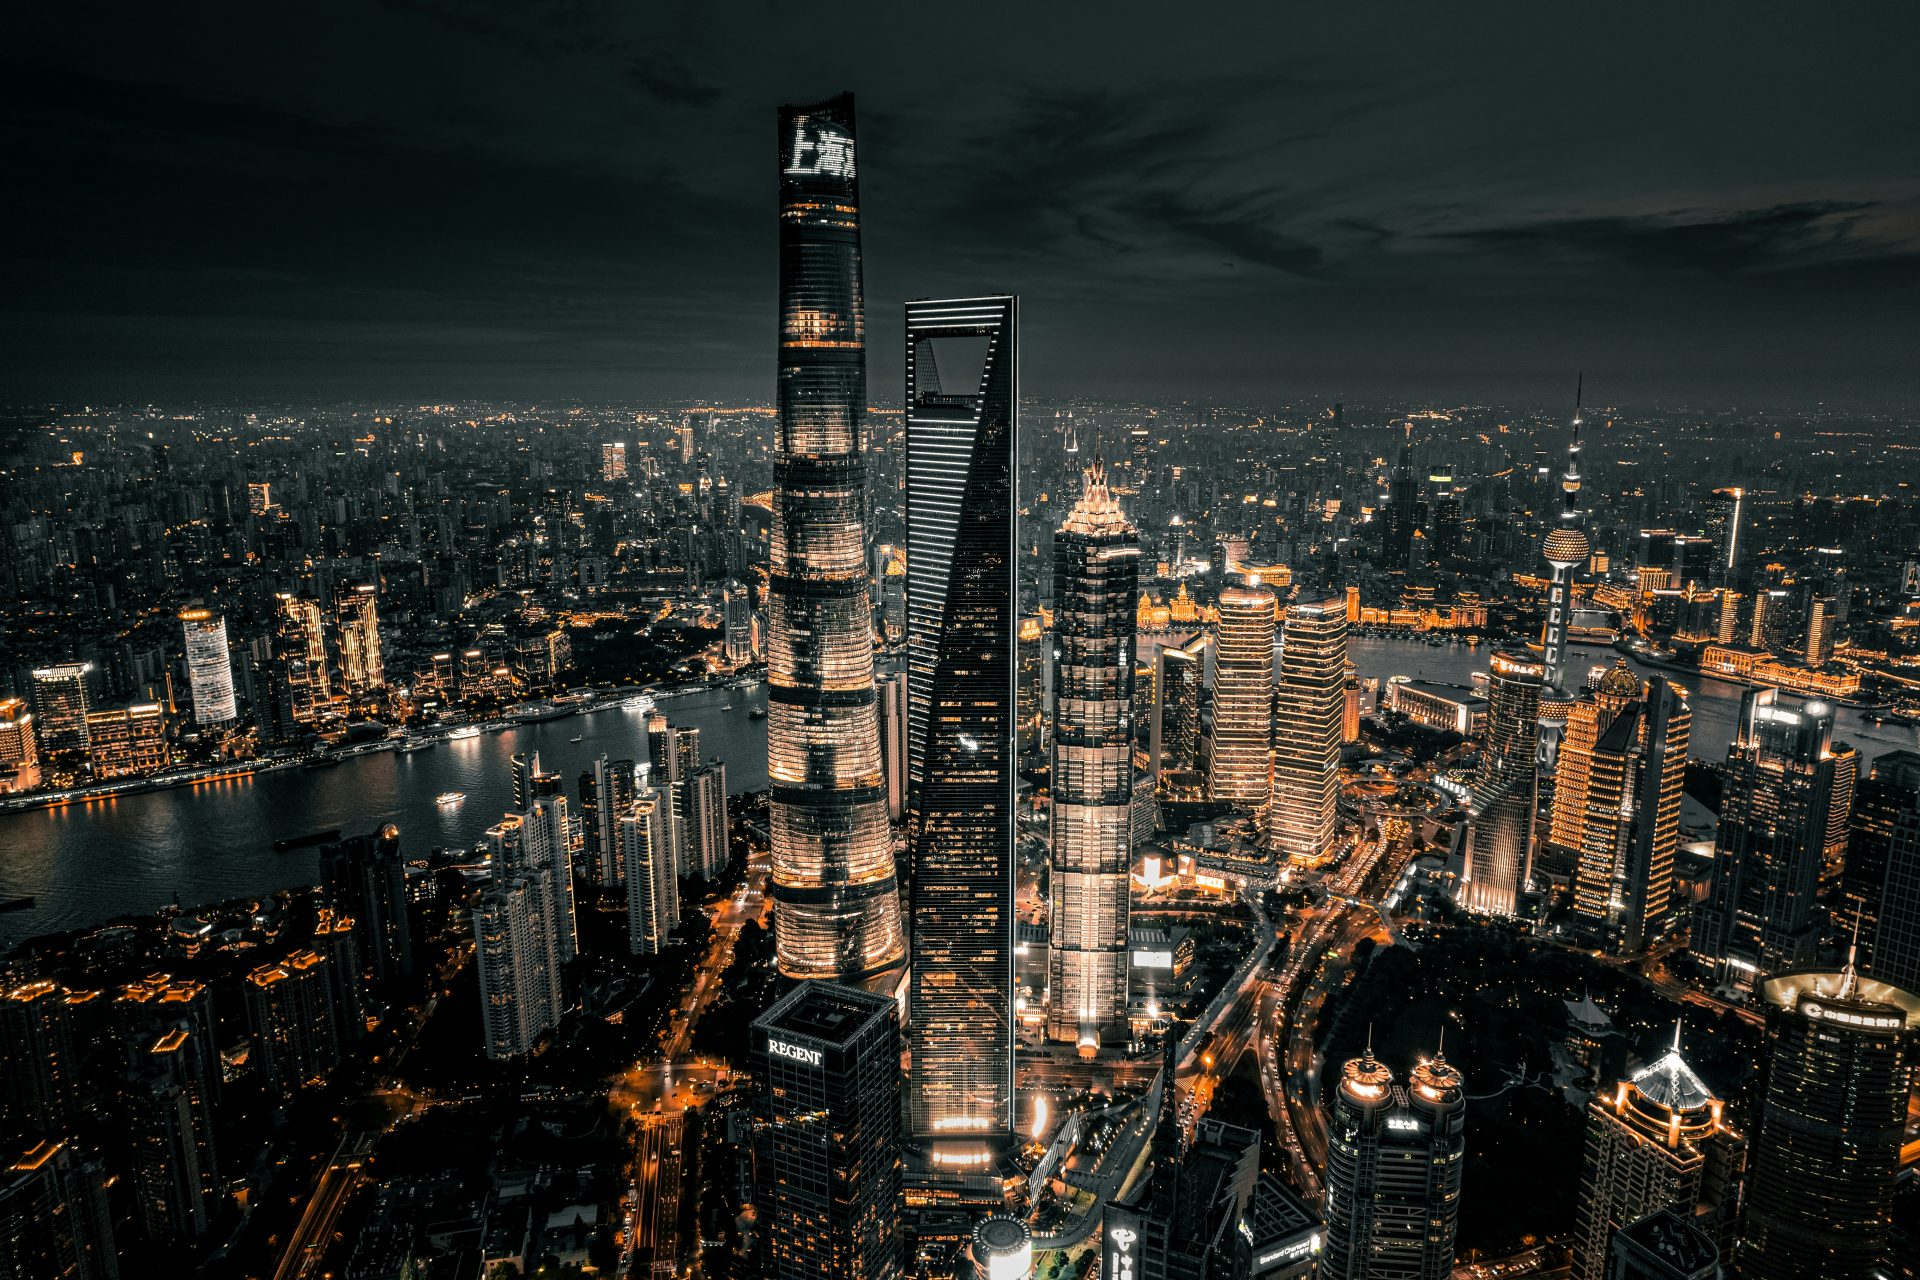 10. Shanghai, China 